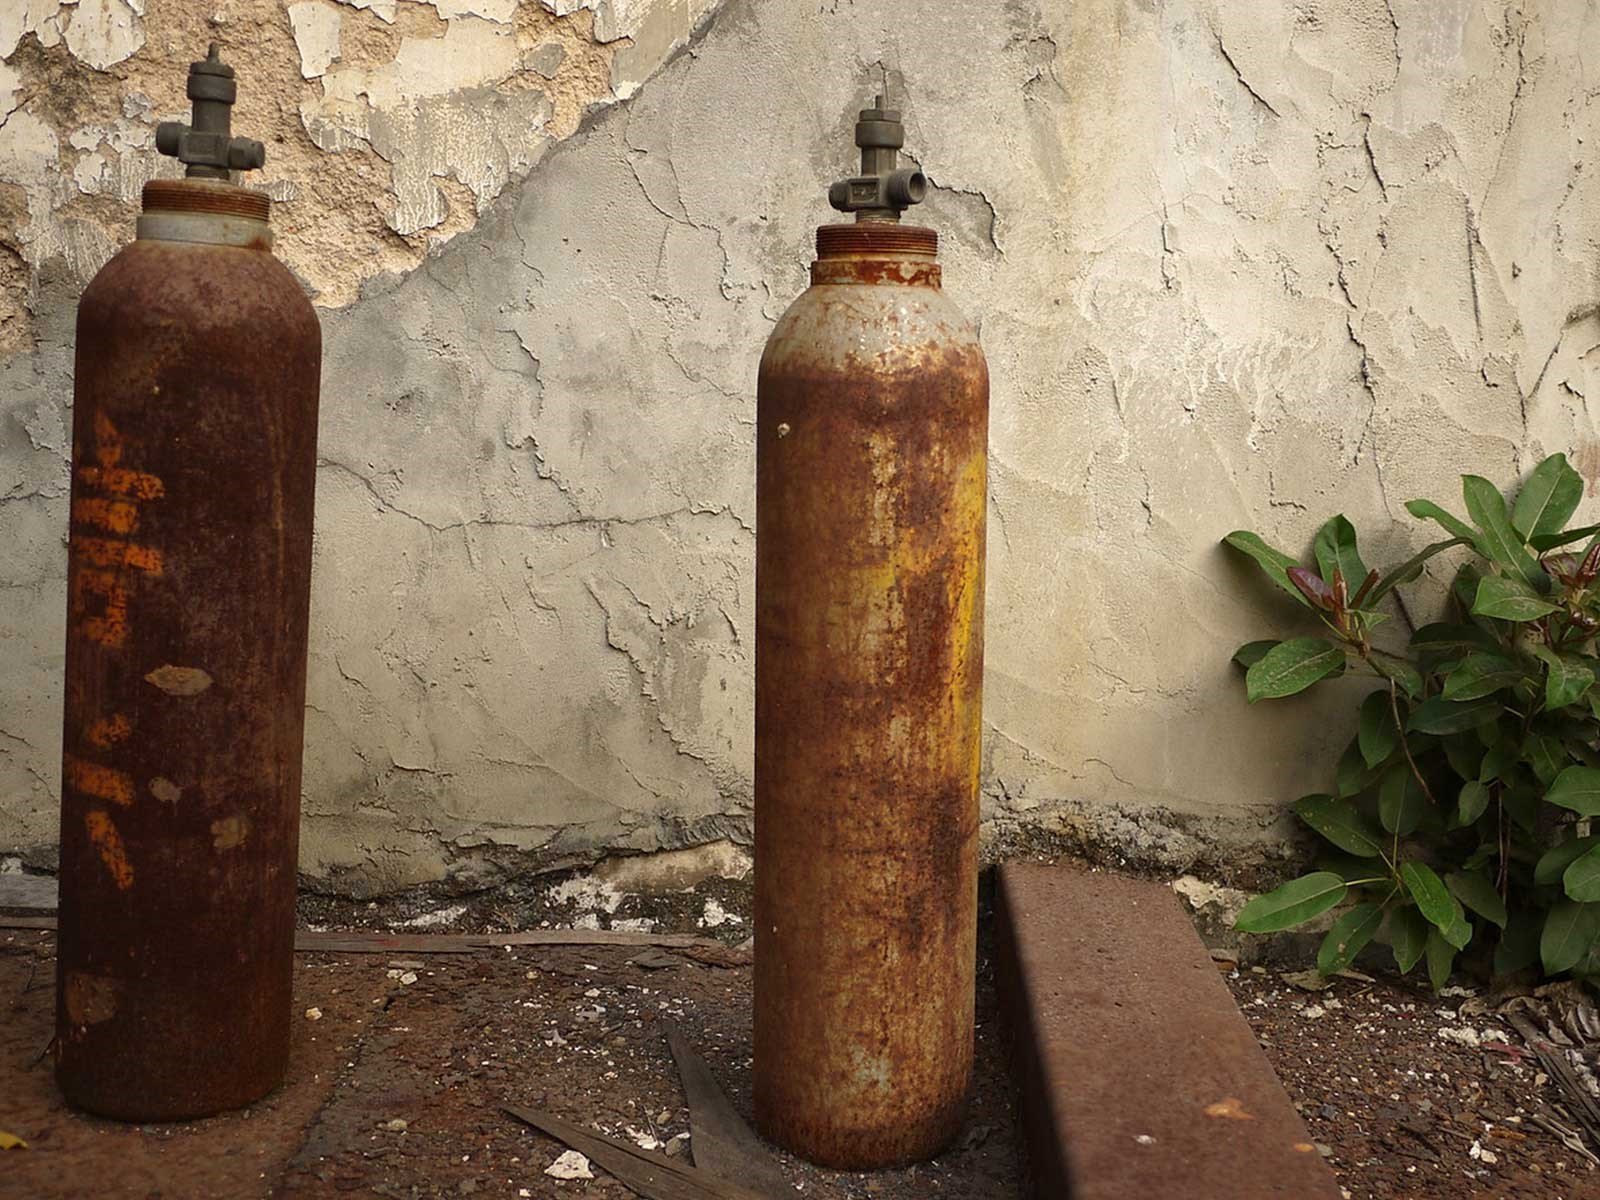 2 rustne gasflasker skal være fortid i det klimagasfrie samfund.